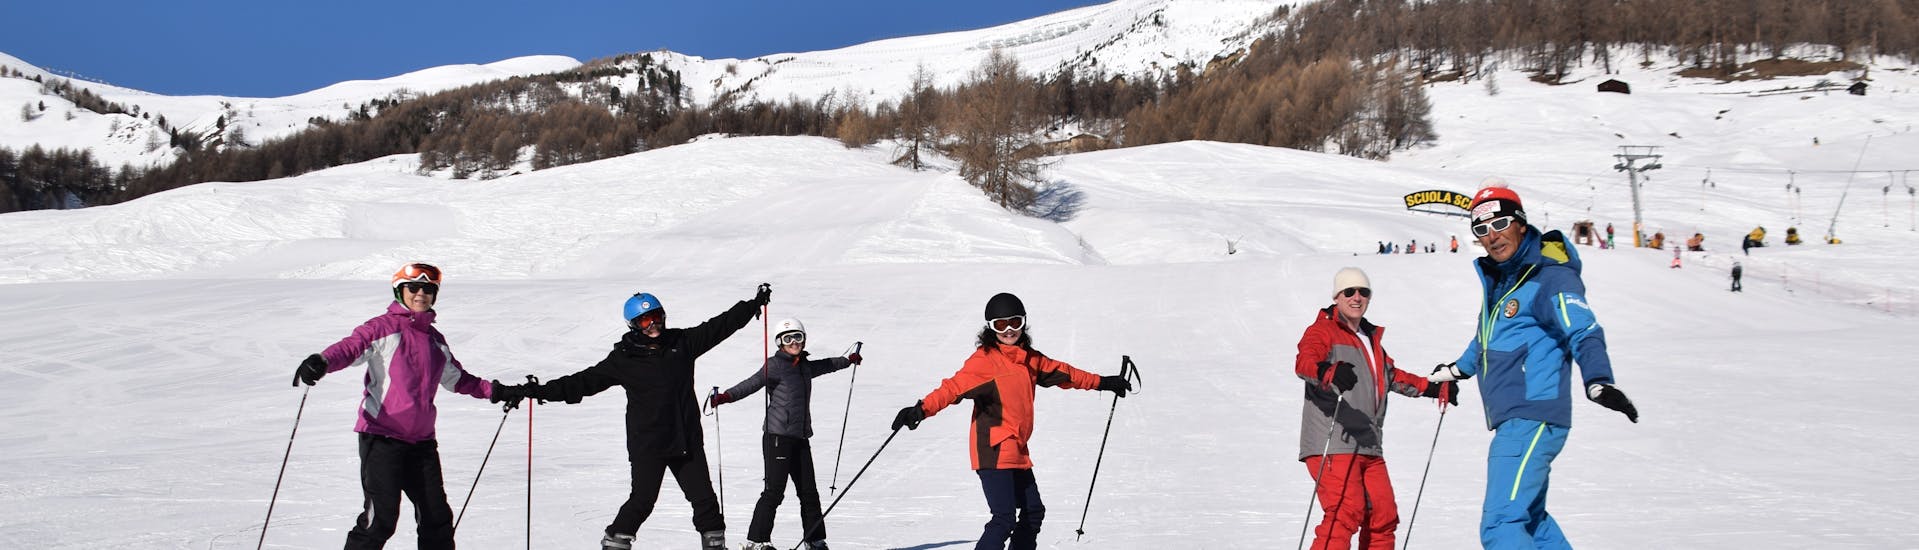 Una famiglia che trascorre la giornata sulla neve insieme a Livigno durante una delle lezioni private di sci per famiglie e amici.